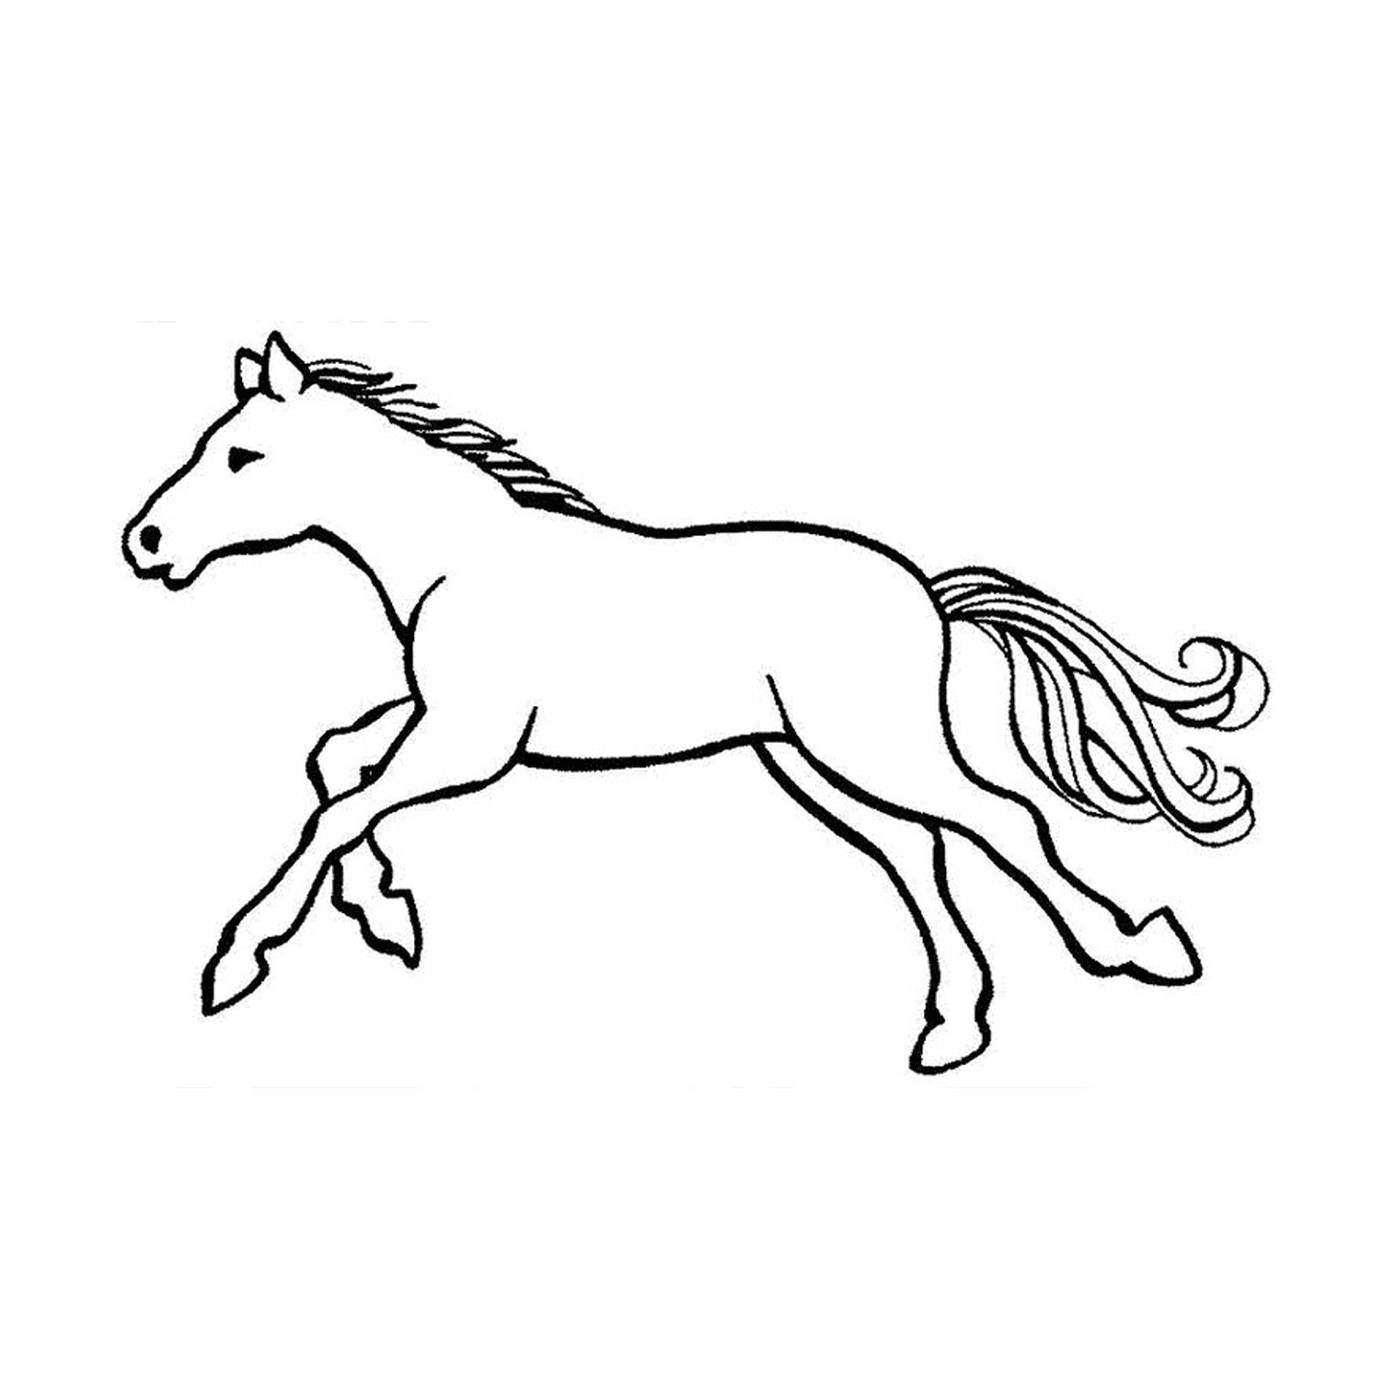   Chevaux au galop - Un cheval qui court 